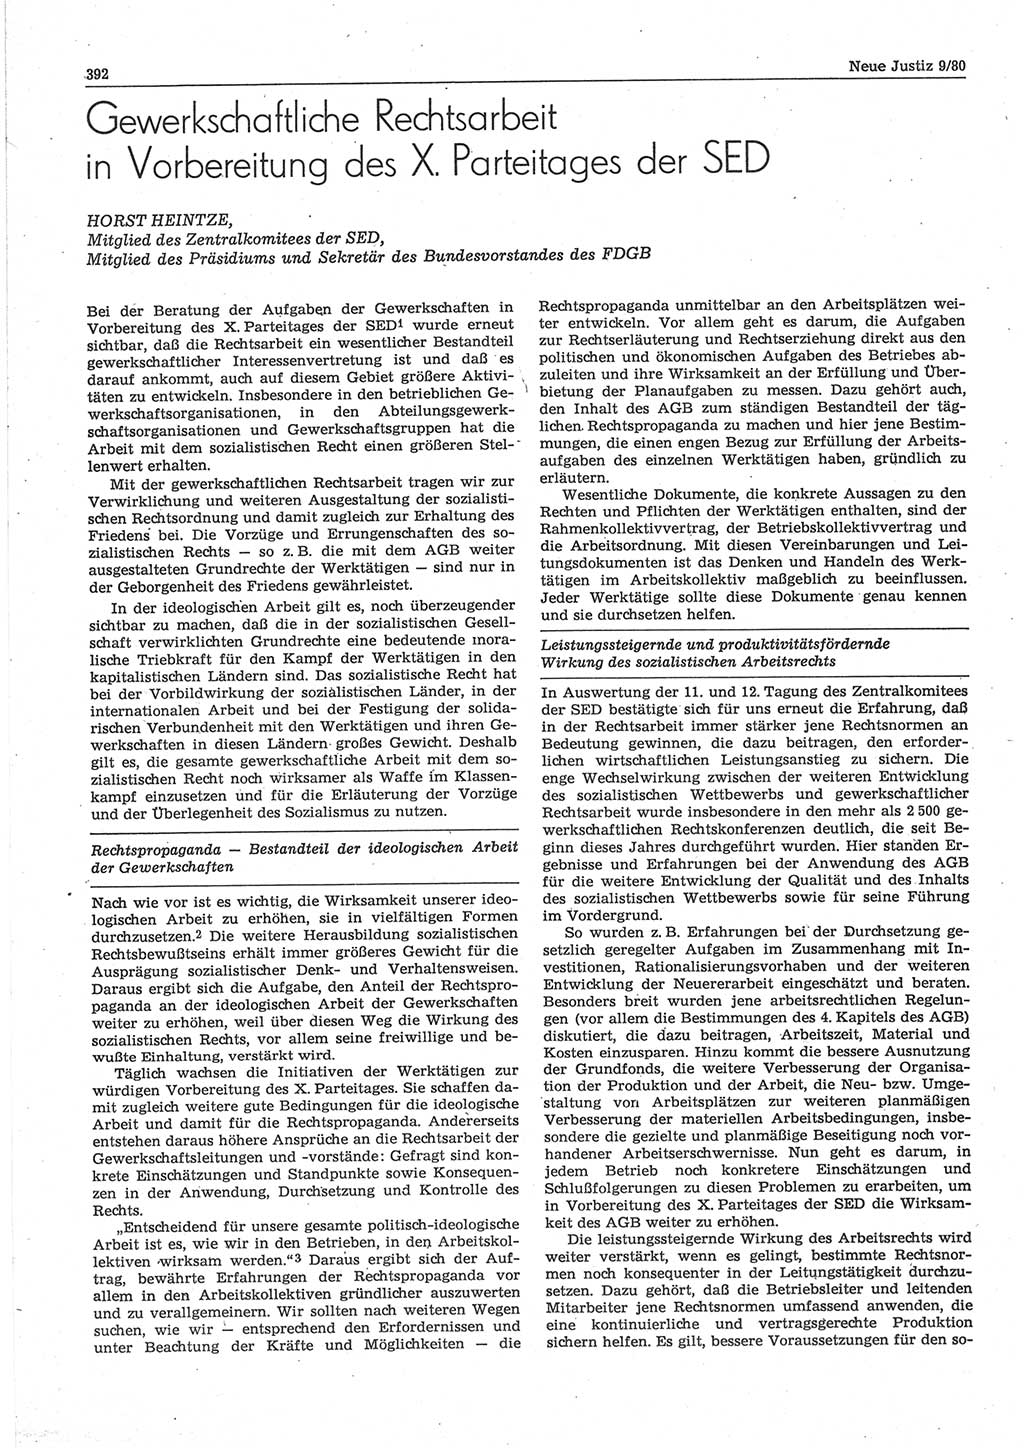 Neue Justiz (NJ), Zeitschrift für sozialistisches Recht und Gesetzlichkeit [Deutsche Demokratische Republik (DDR)], 34. Jahrgang 1980, Seite 392 (NJ DDR 1980, S. 392)